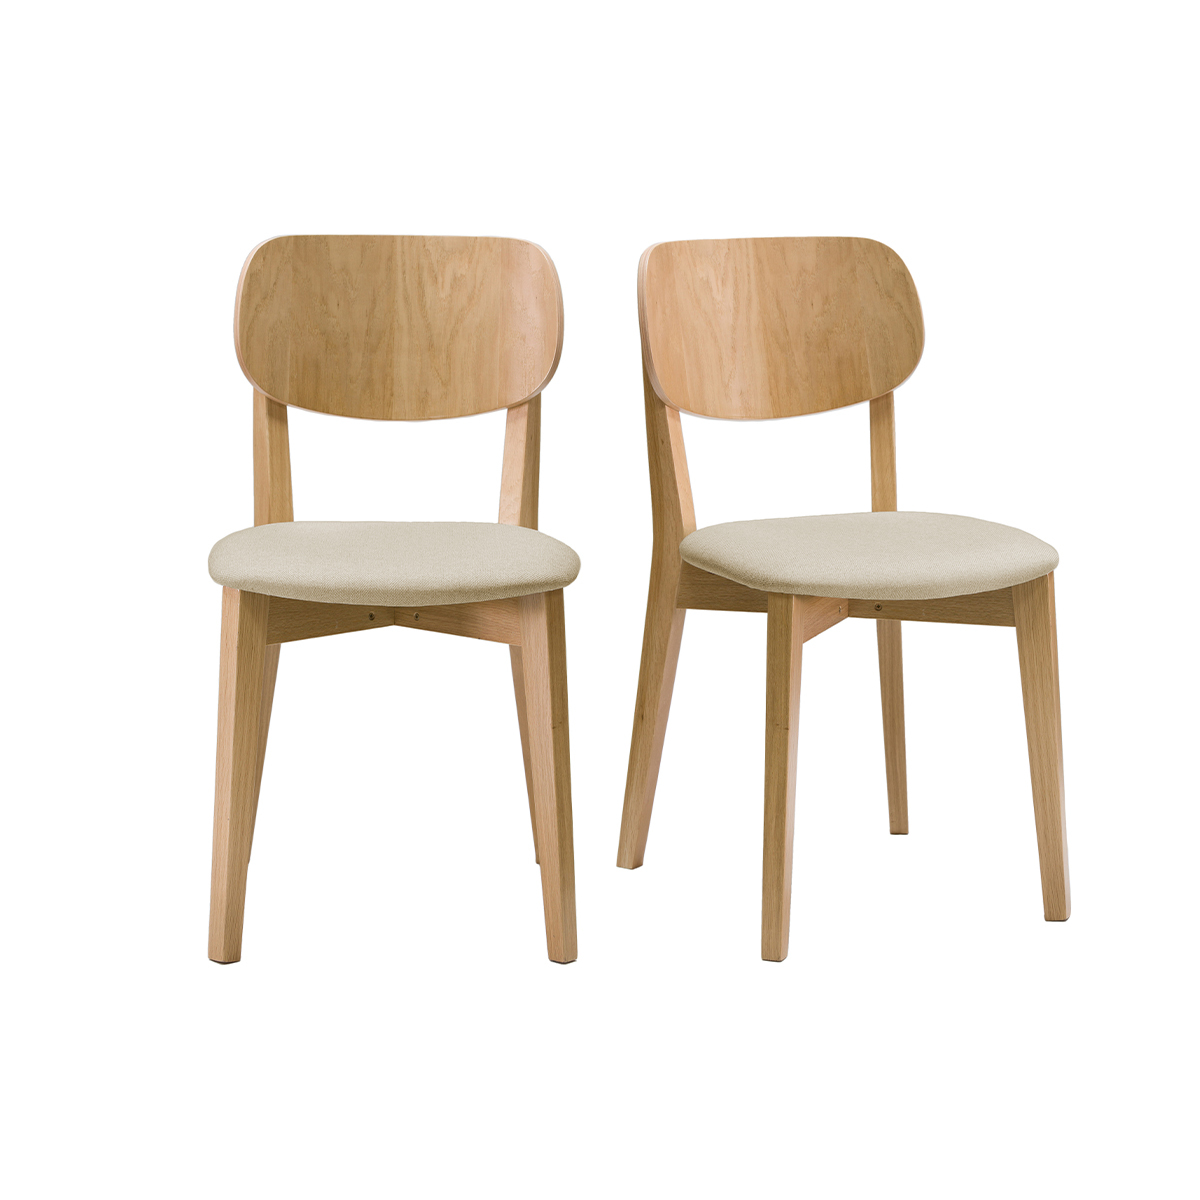 Chaises vintage bois clair chêne et assis en tissu beige (lot de 2) LUCIA vue1